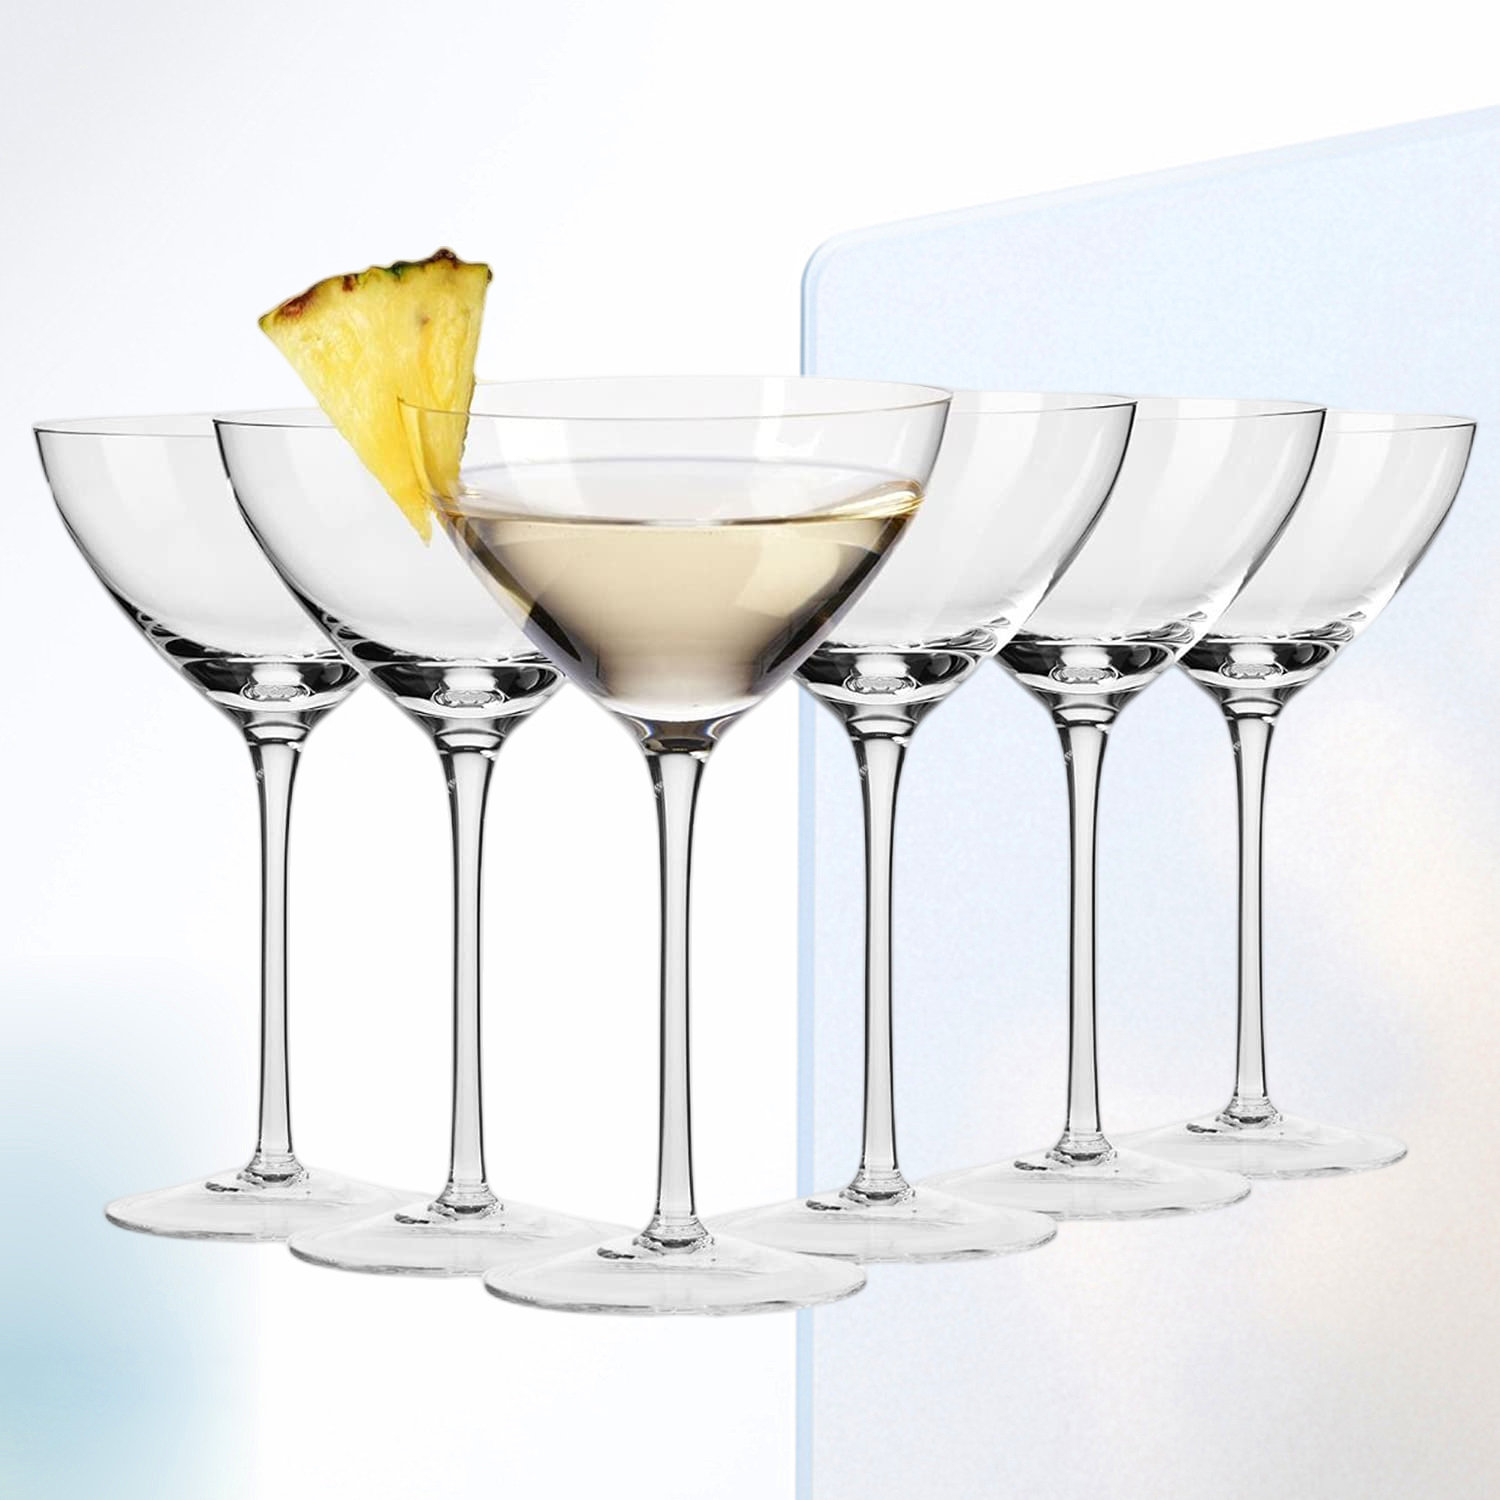 Qxttech 6 - Piece 8oz. Glass Martini Glass Glassware Set